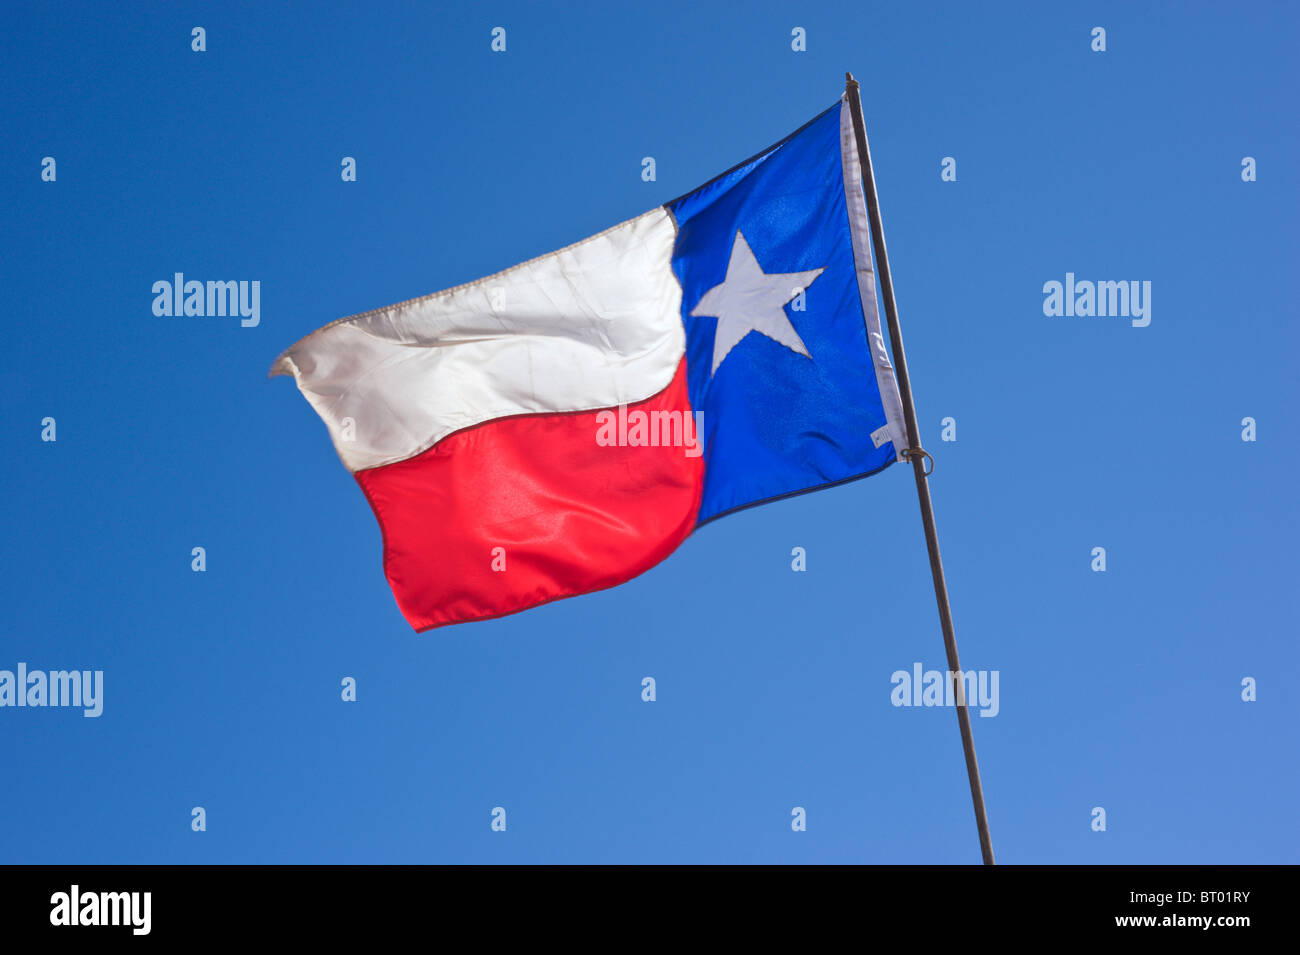 Le drapeau de l'état du Texas, à la fière mouches Lincoln County Cowboy Symposium et Chuck Wagon Cook-Off, Ruidoso Downs, Nouveau Mexique. Banque D'Images